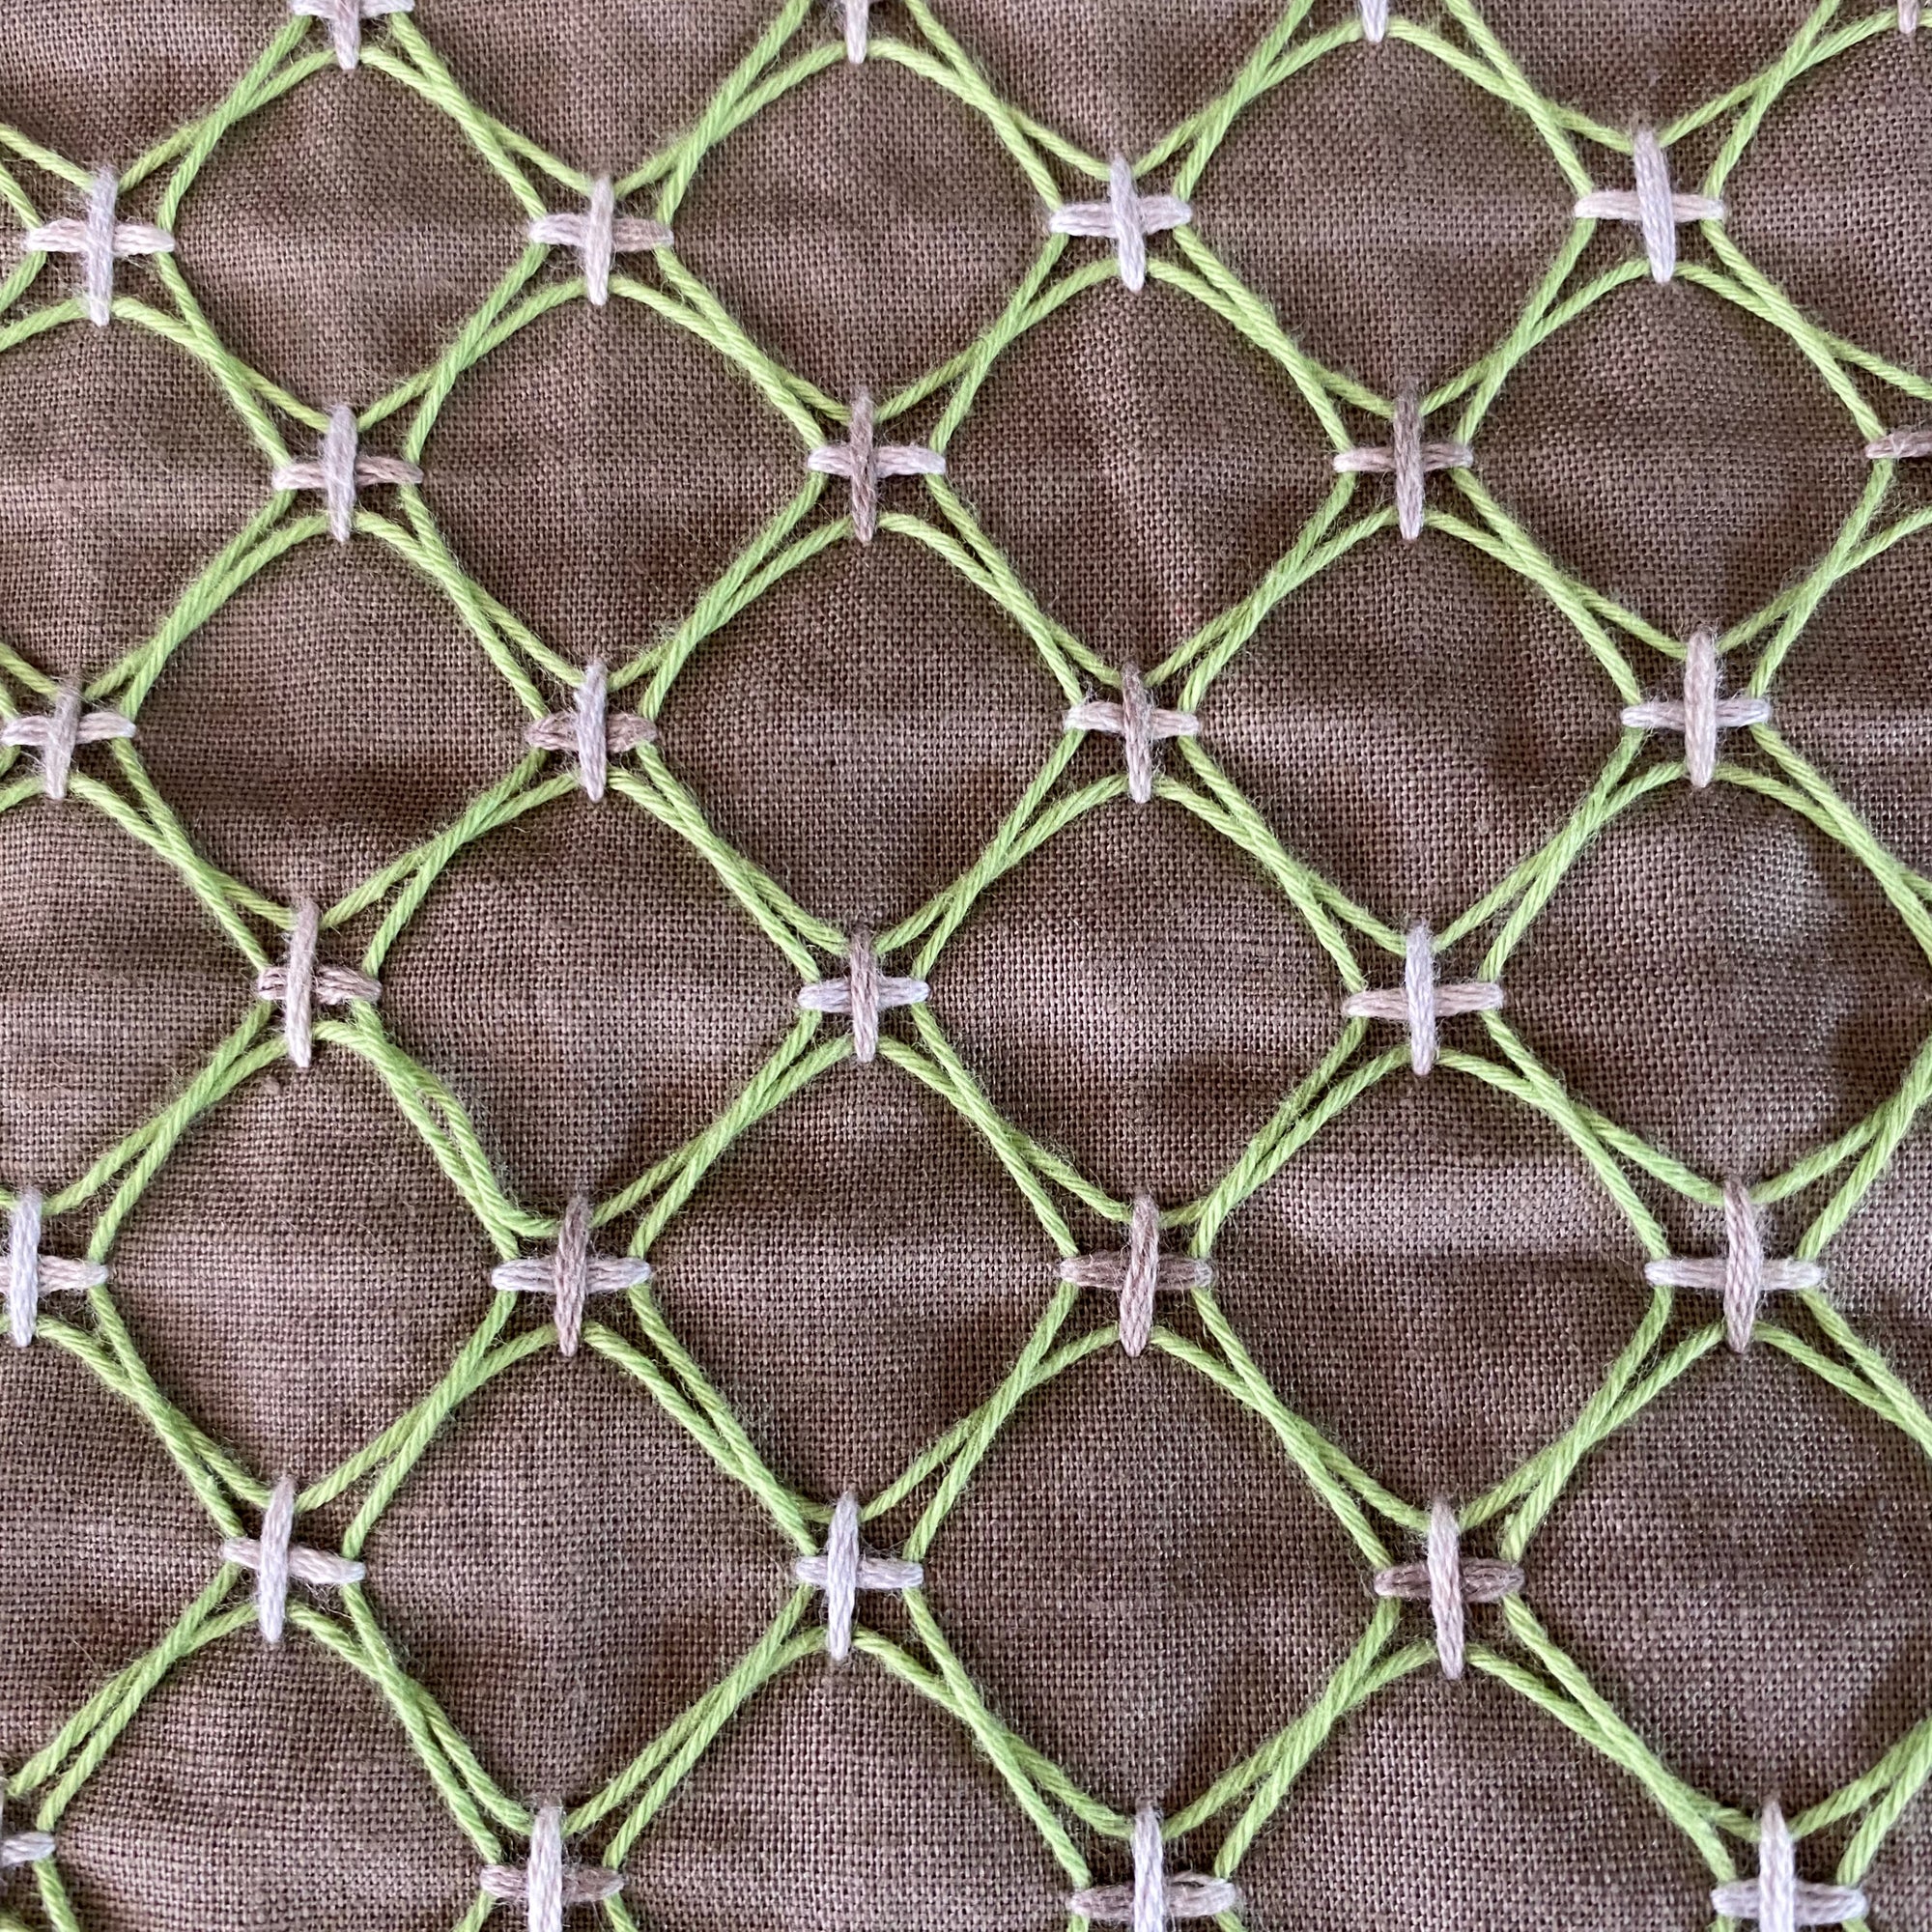 sashiko kuguri stitched fabric